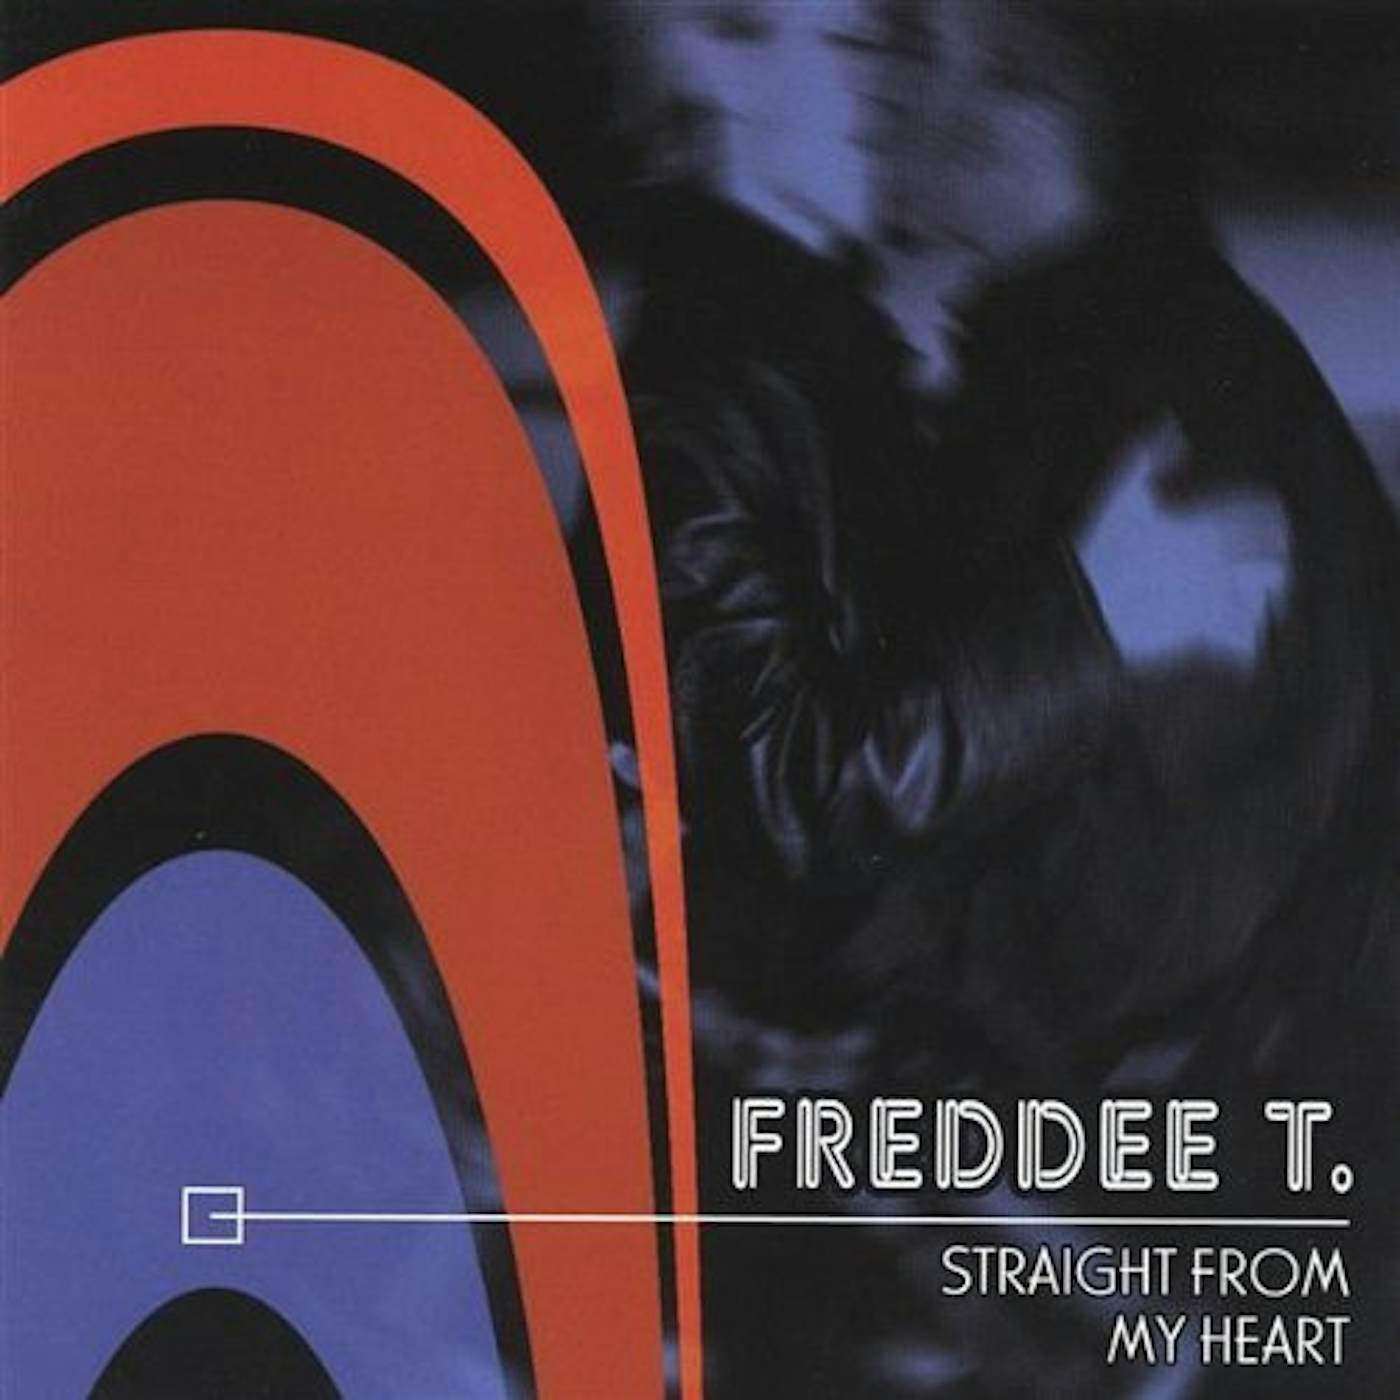 FREDDEE T./SINGLE CD